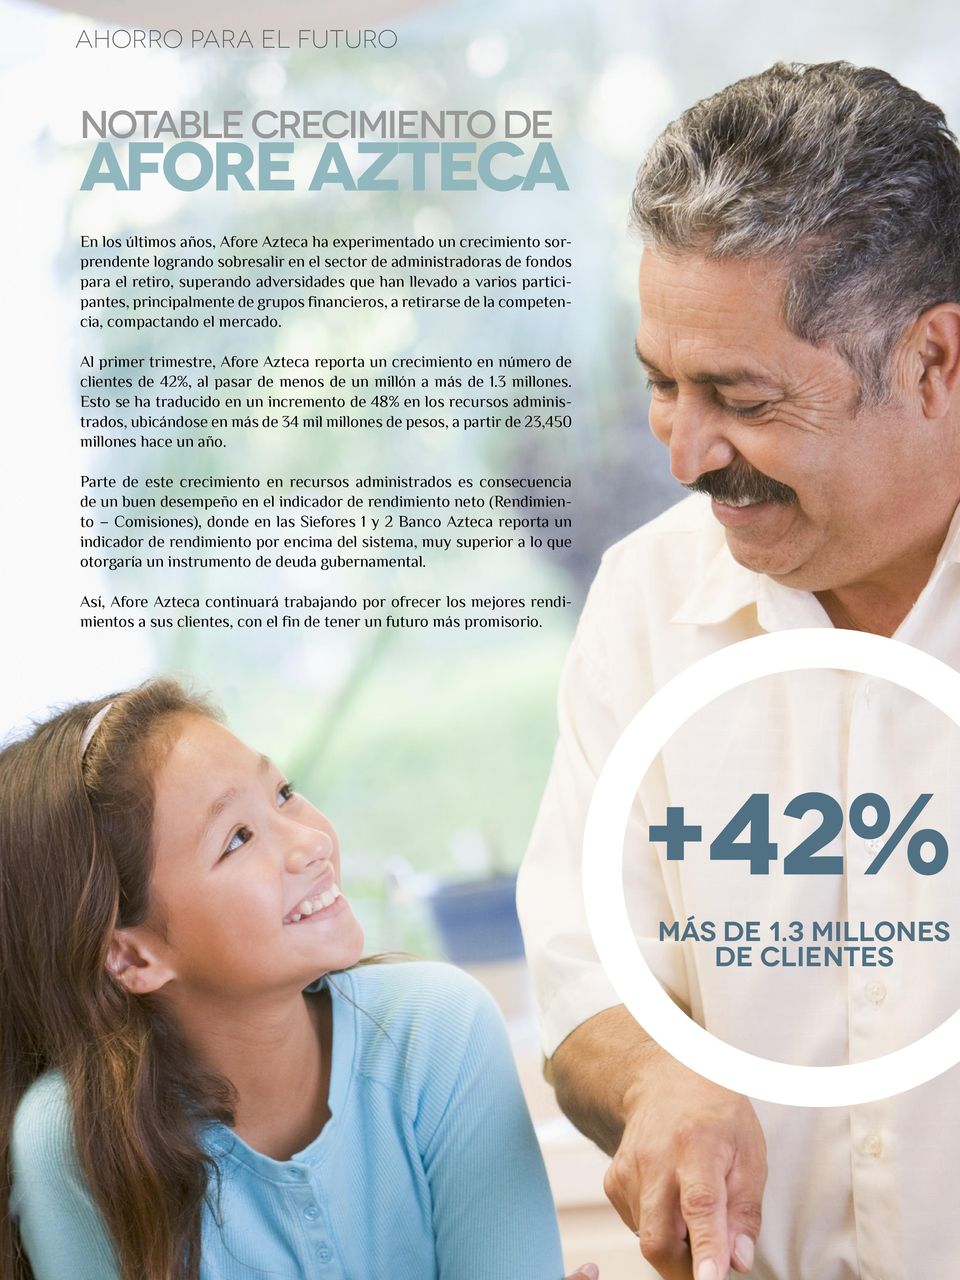 Al primer trimestre, Afore Azteca reporta un crecimiento en número de clientes de 42%, al pasar de menos de un millón a más de 1.3 millones.